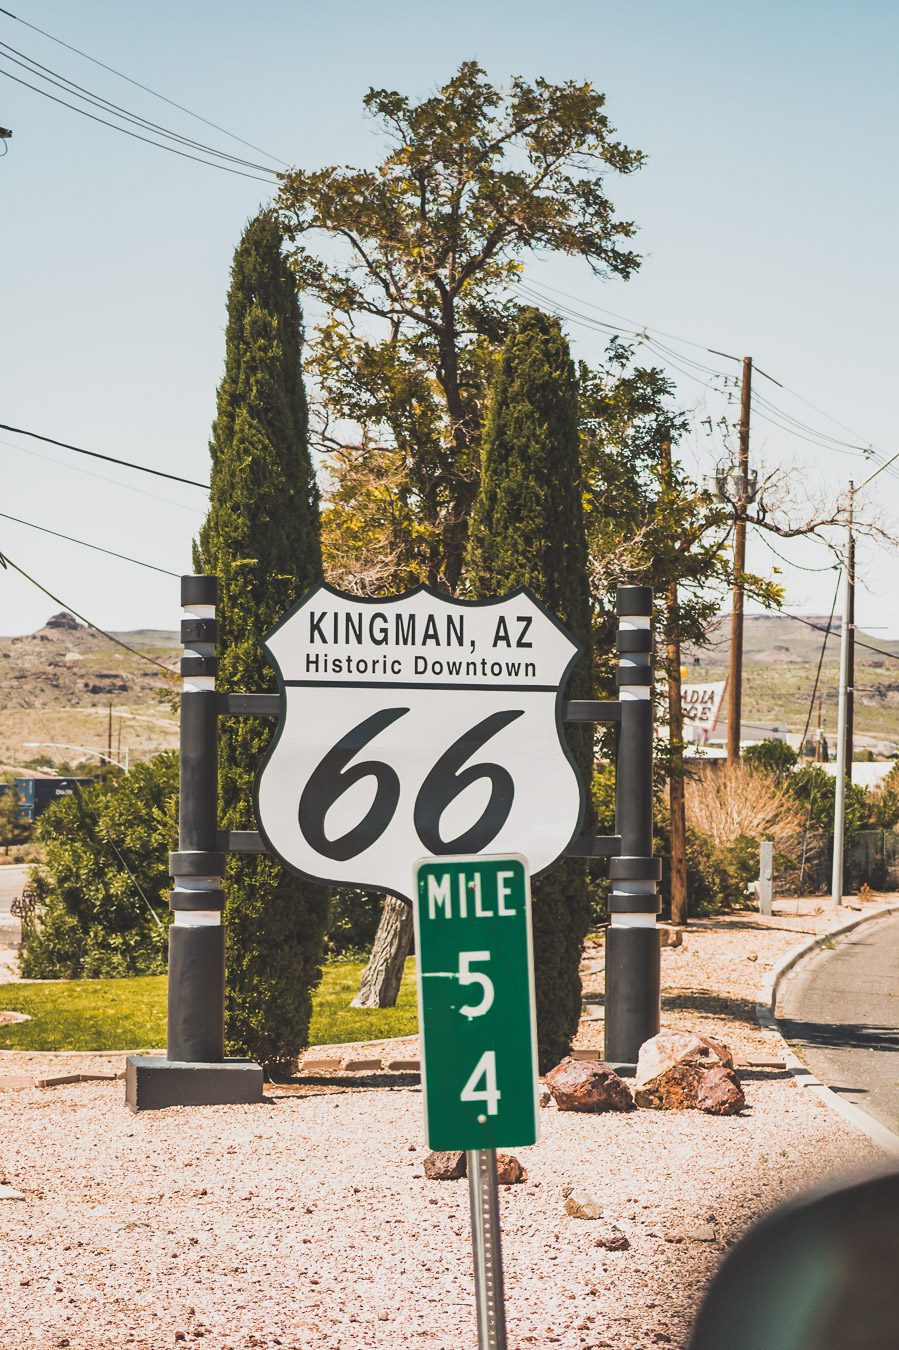 Kingman, Arizona